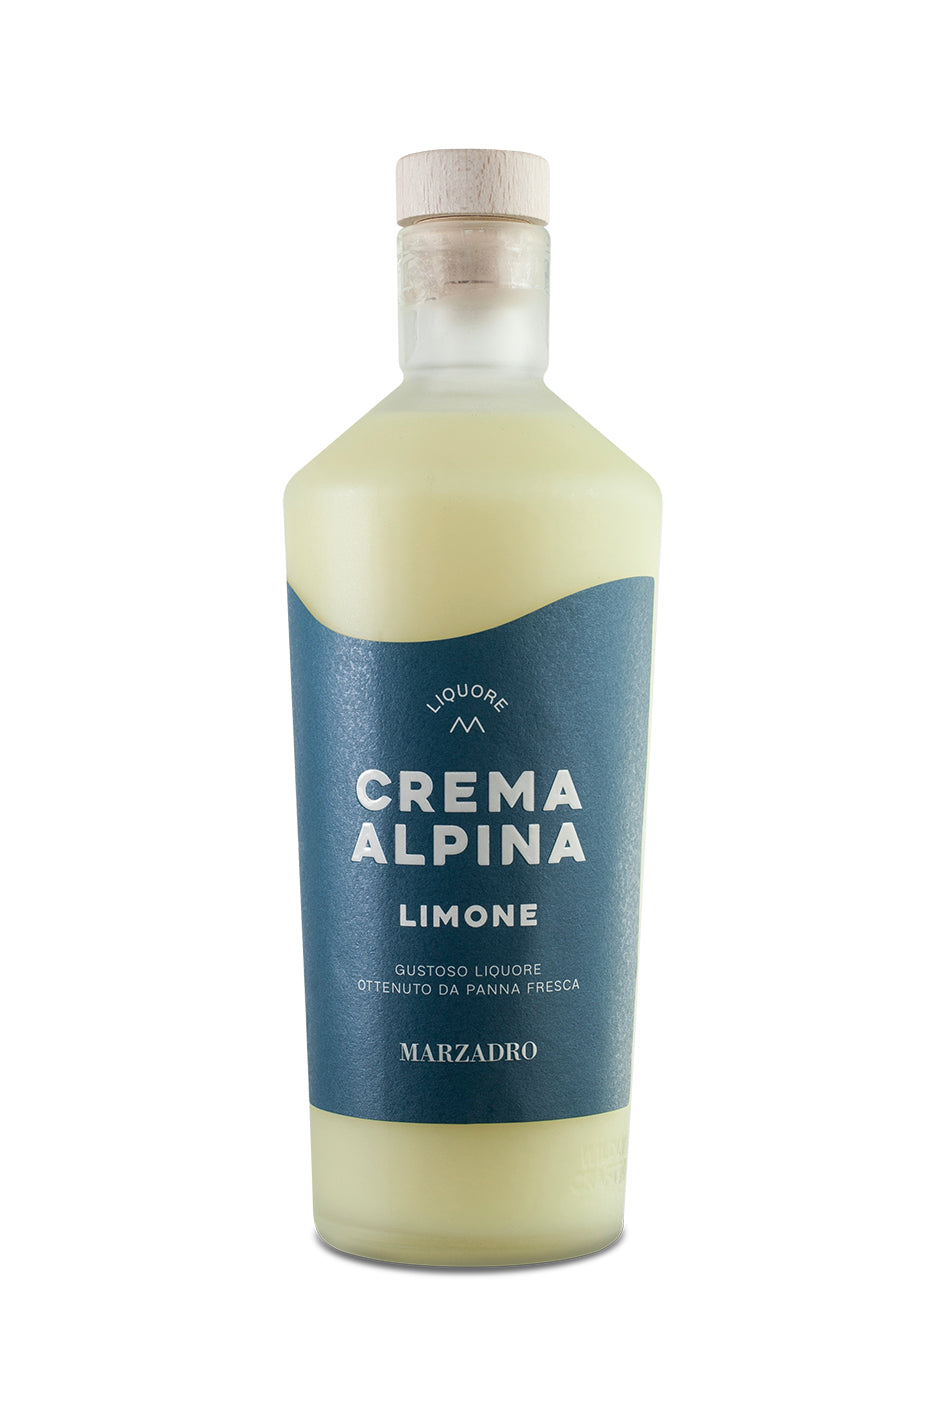 Marzadro Crema Alpina Limone - 0,70 l